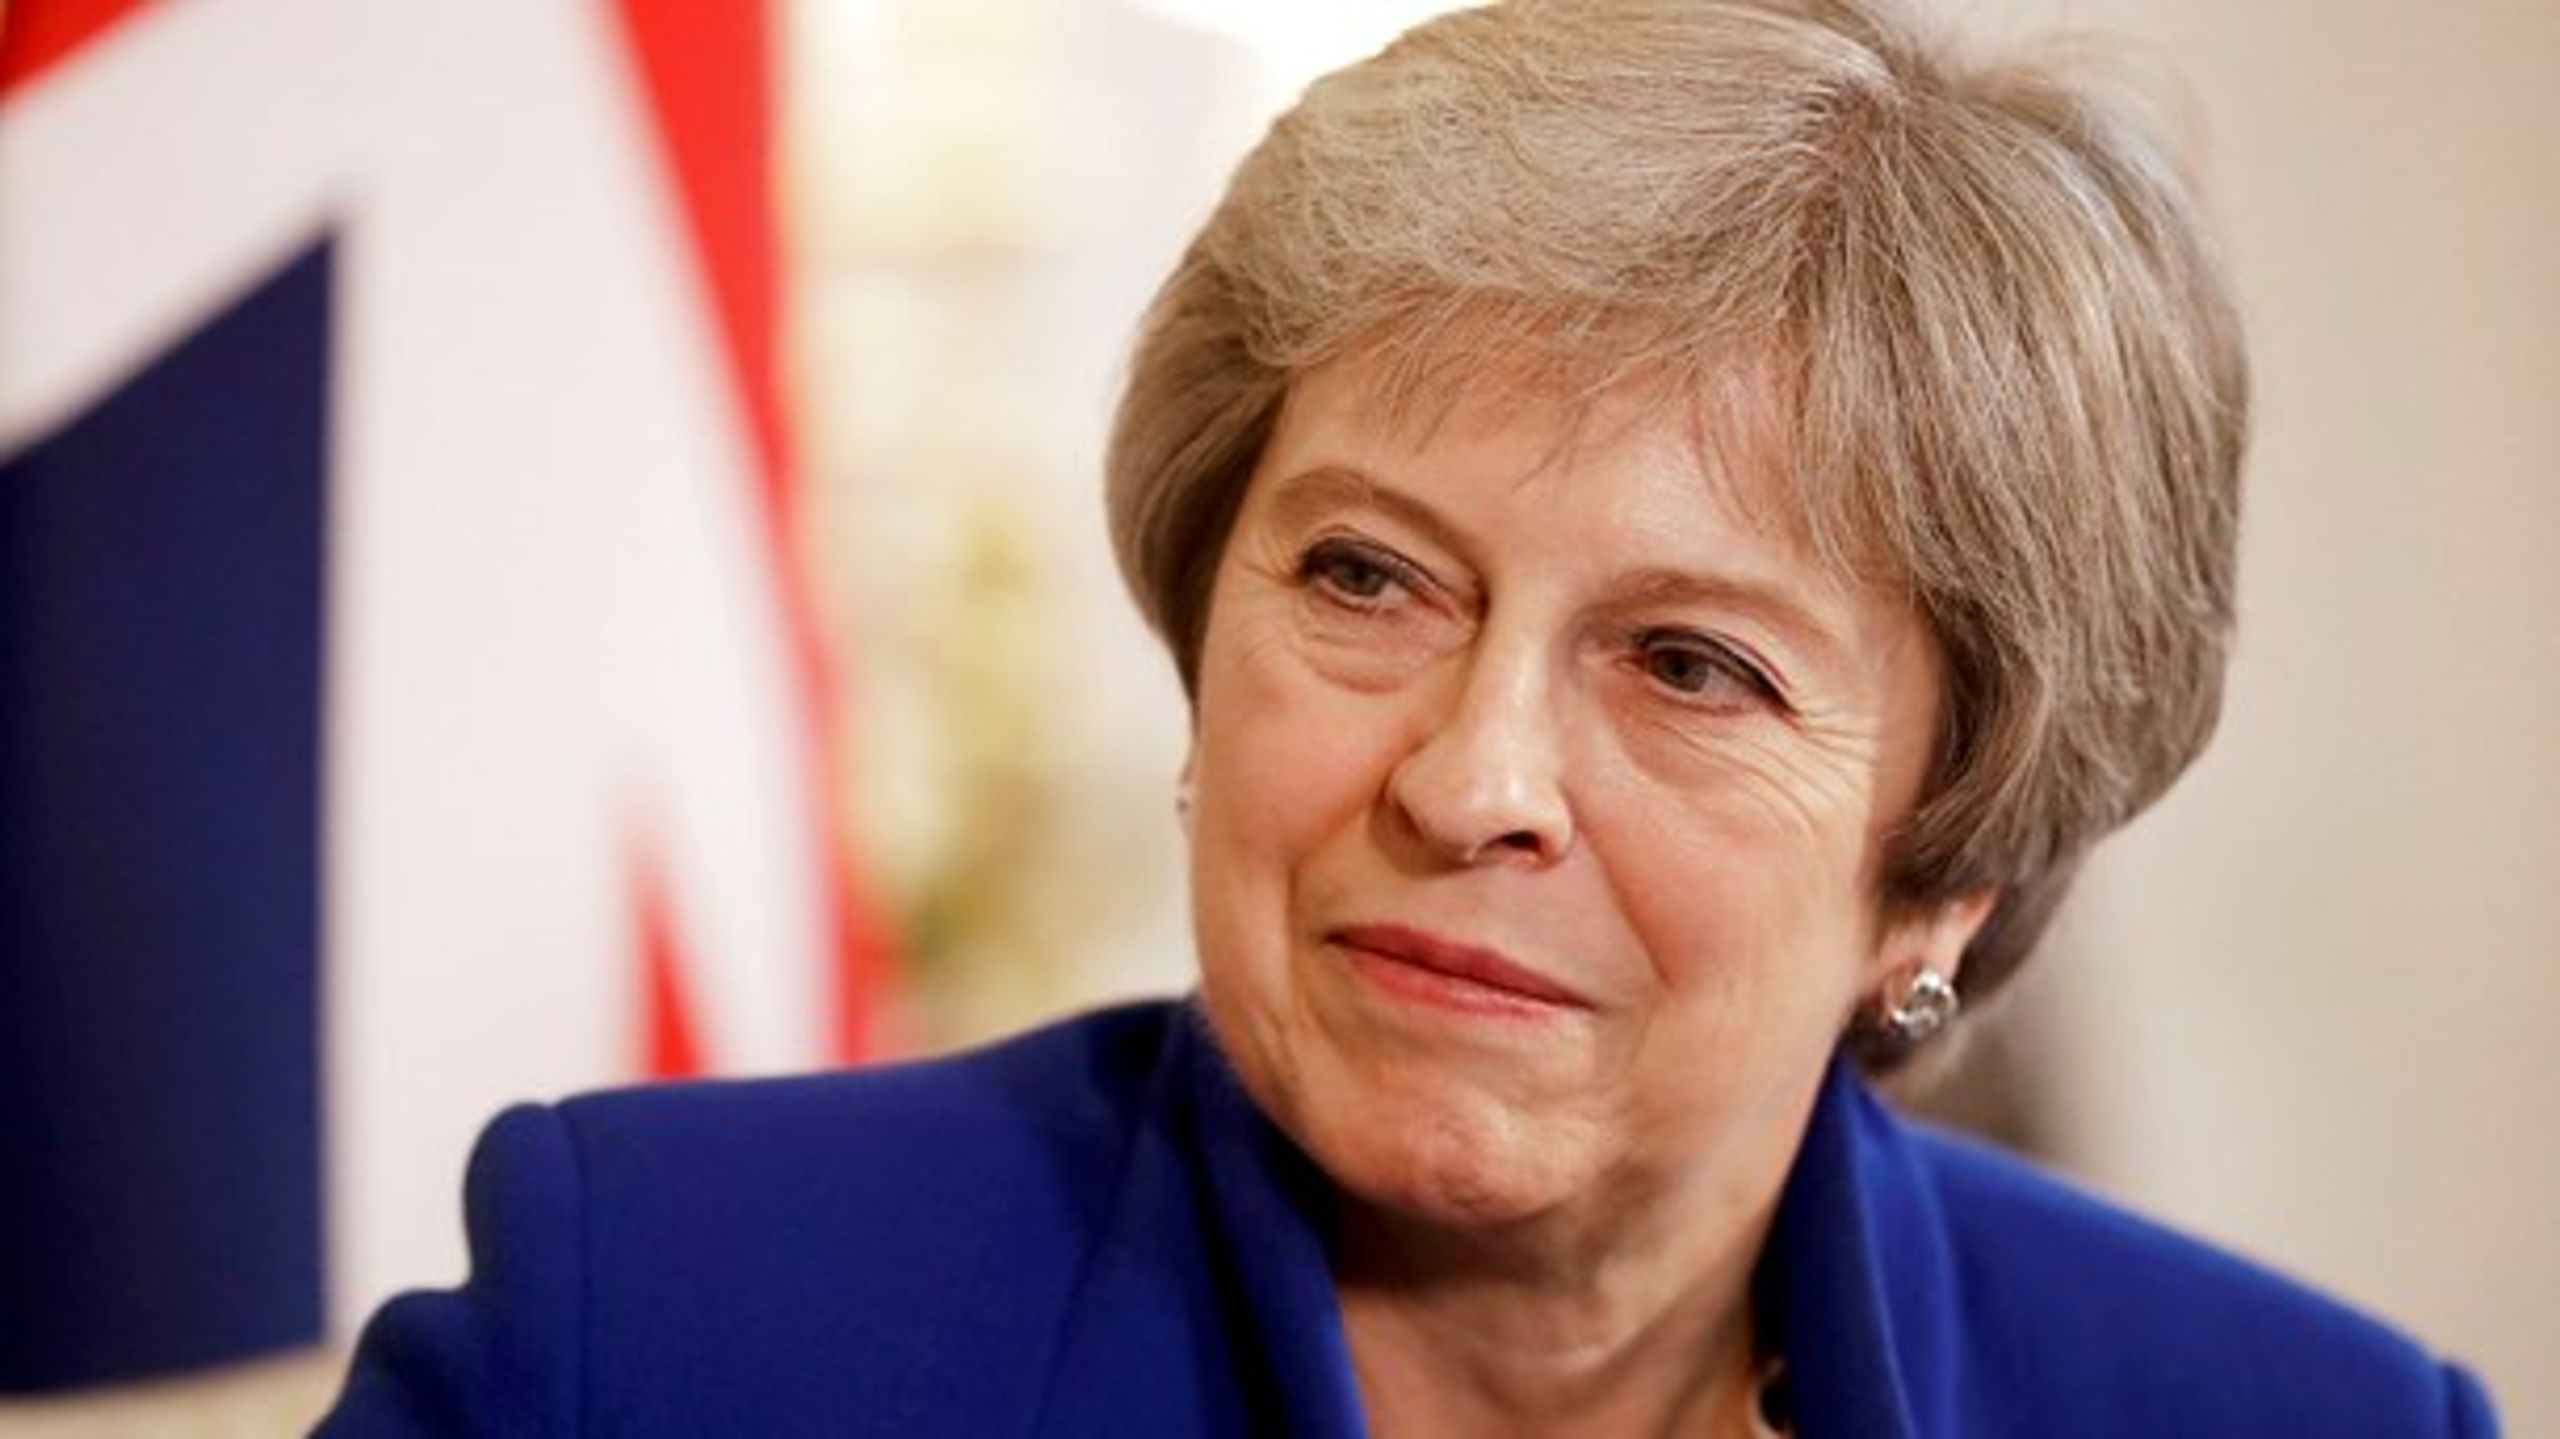 Den næste hurdle i Brexit-forhandlingerne for premierminister Theresa May er at få næste års finanslov vedtaget. Først derefter kan der tages beslutninger om den britiske exit fra EU.